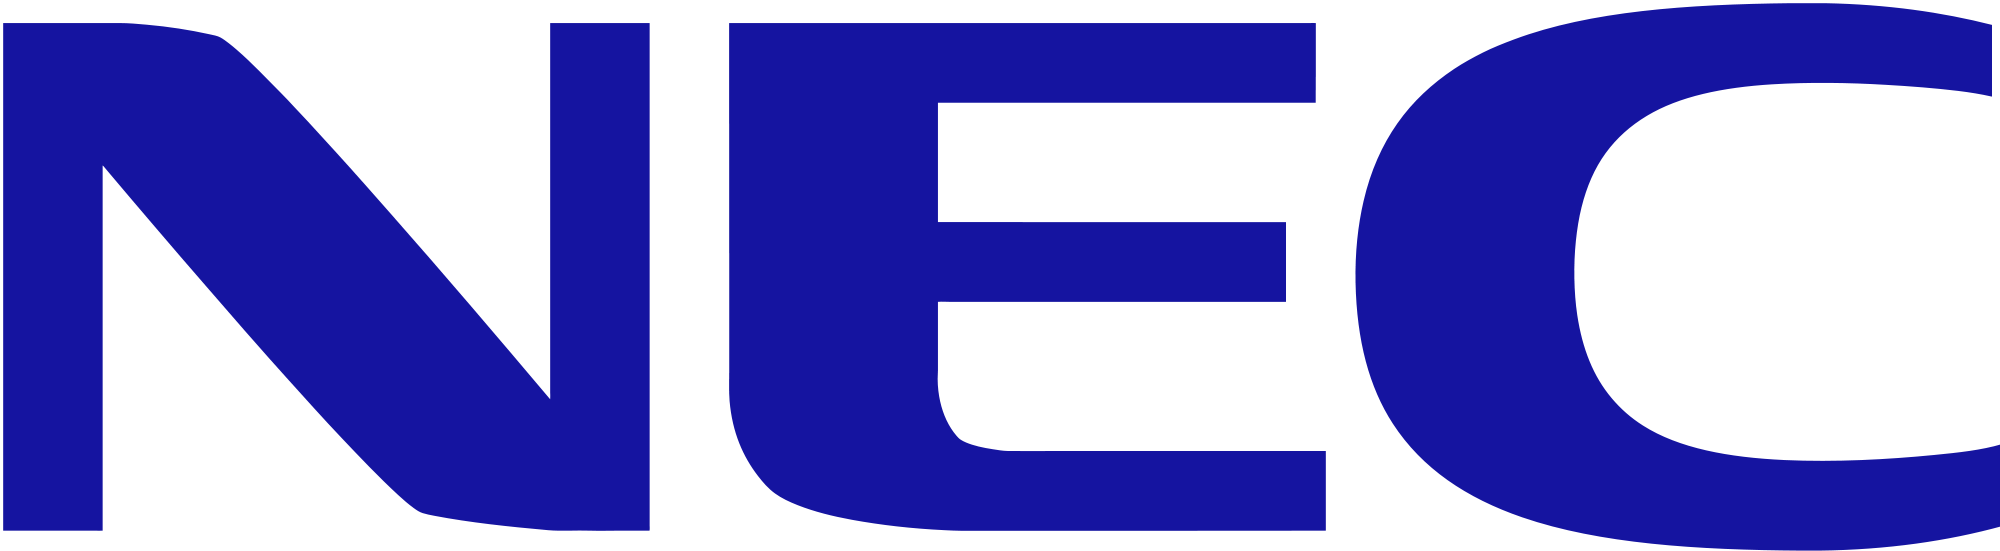 NEC symbol